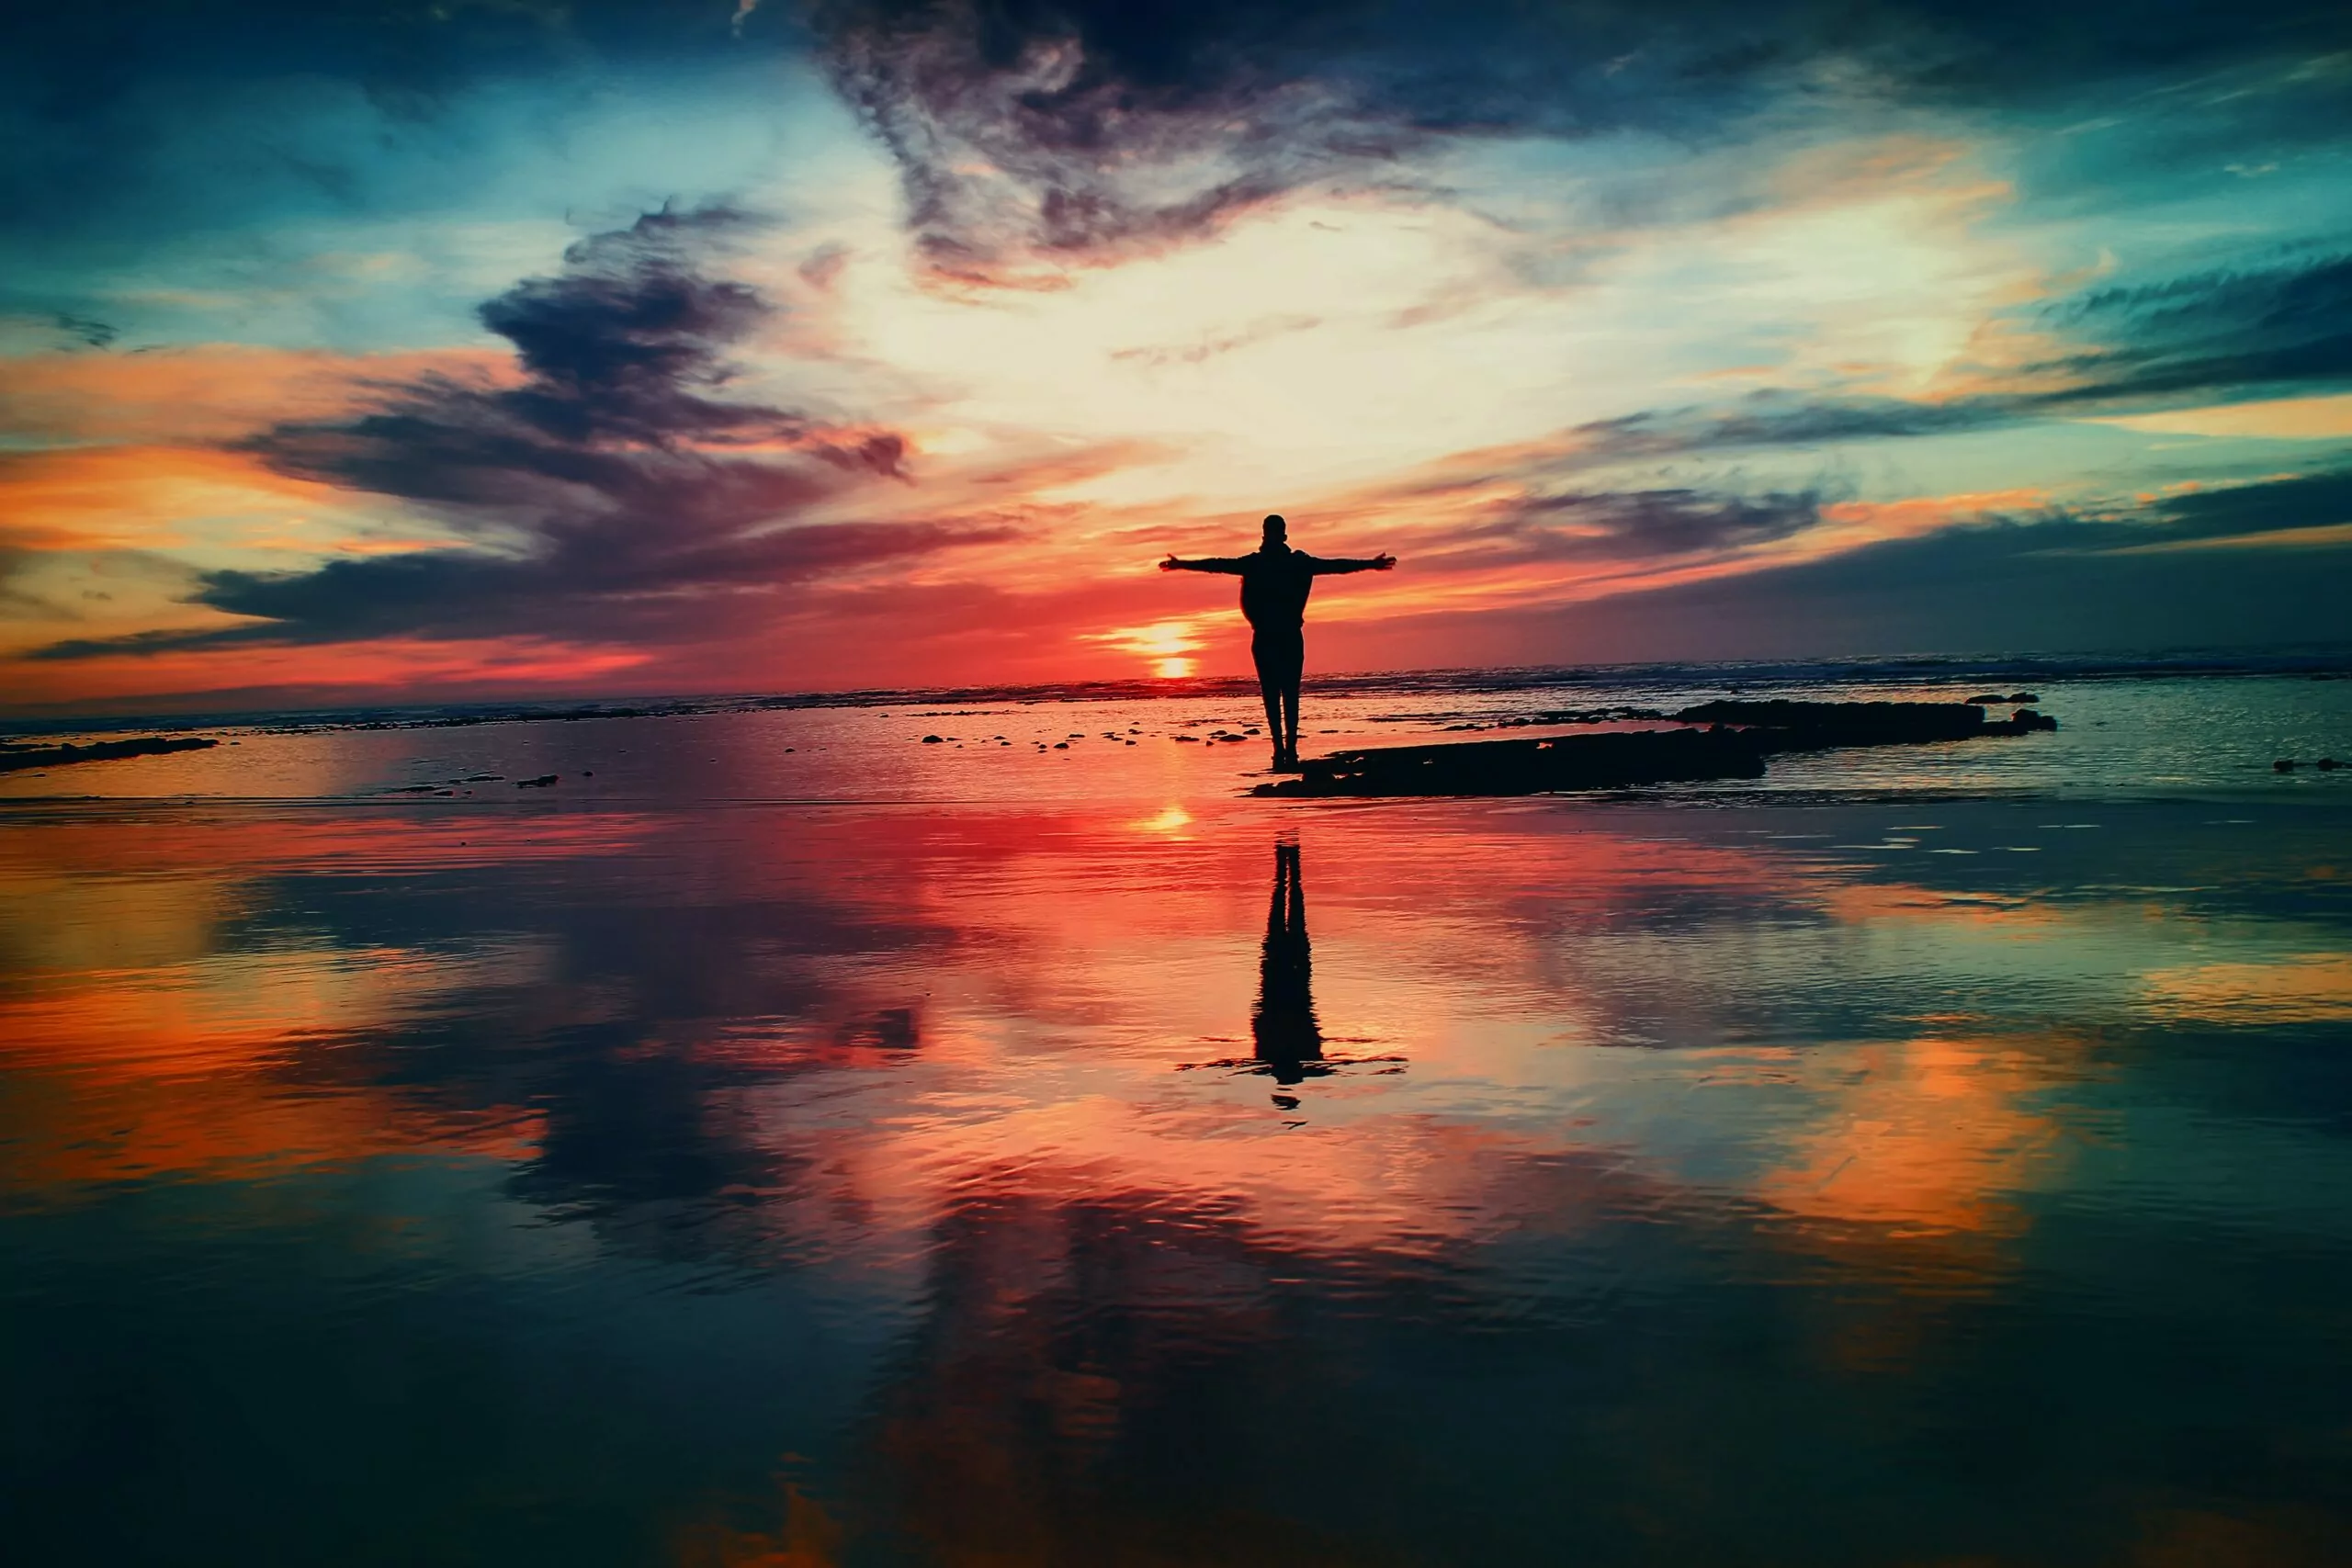 Pessoa na praia, frente para o mar, braços abertos em forma de cruz observando o por do sol em viagem espiritual